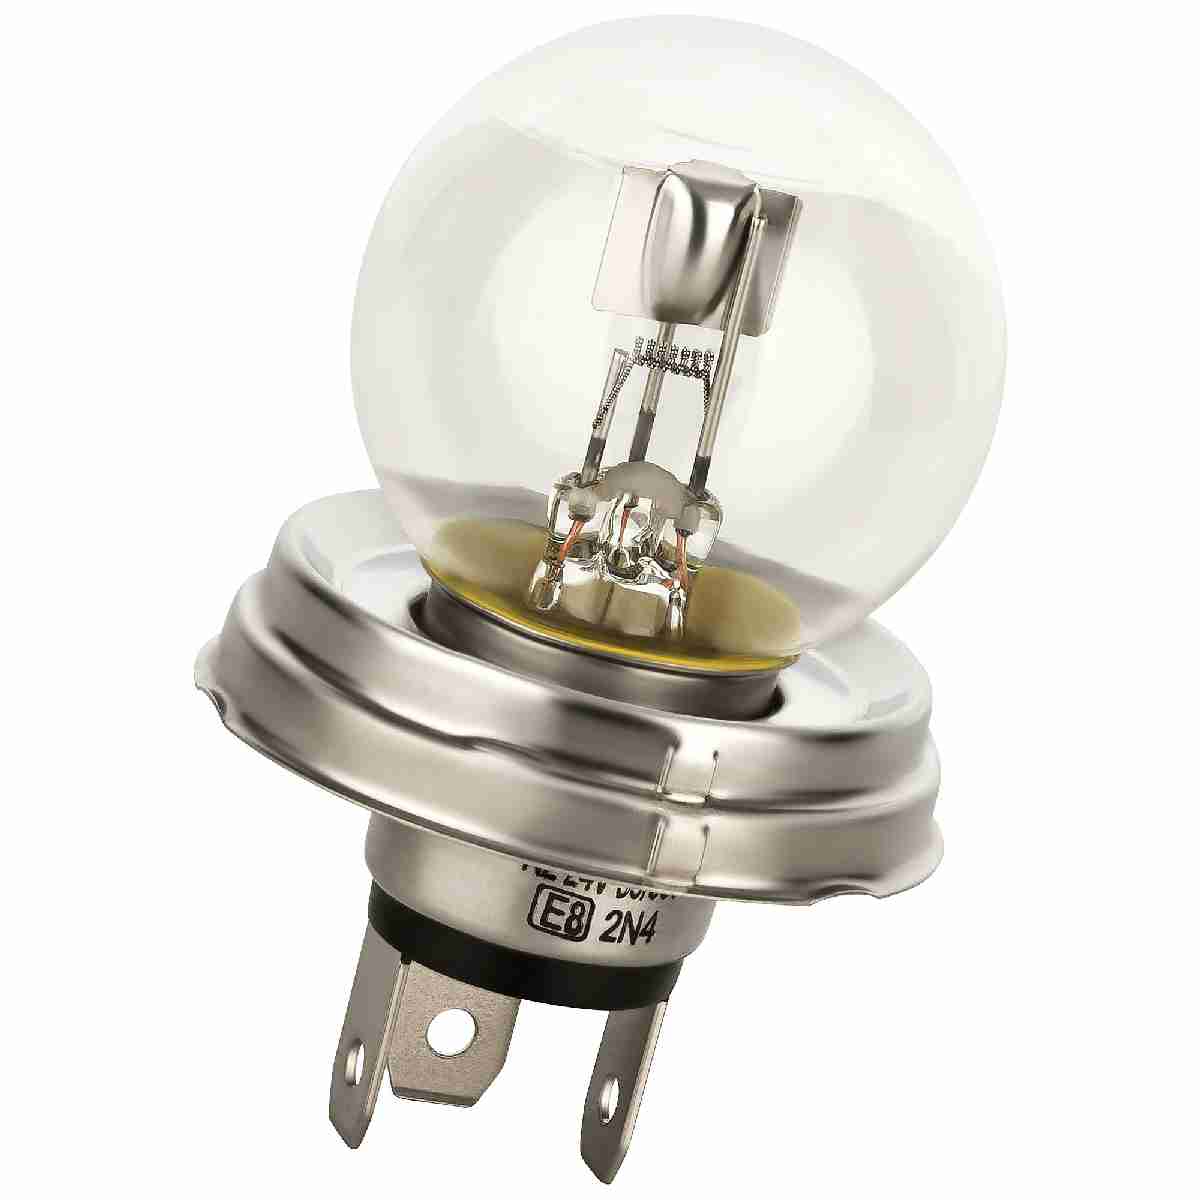 Auto-Lampen-Discount - H7 Lampen und mehr günstig kaufen - 10x BREHMA T2W  Lampe 2W 12V Ba9s